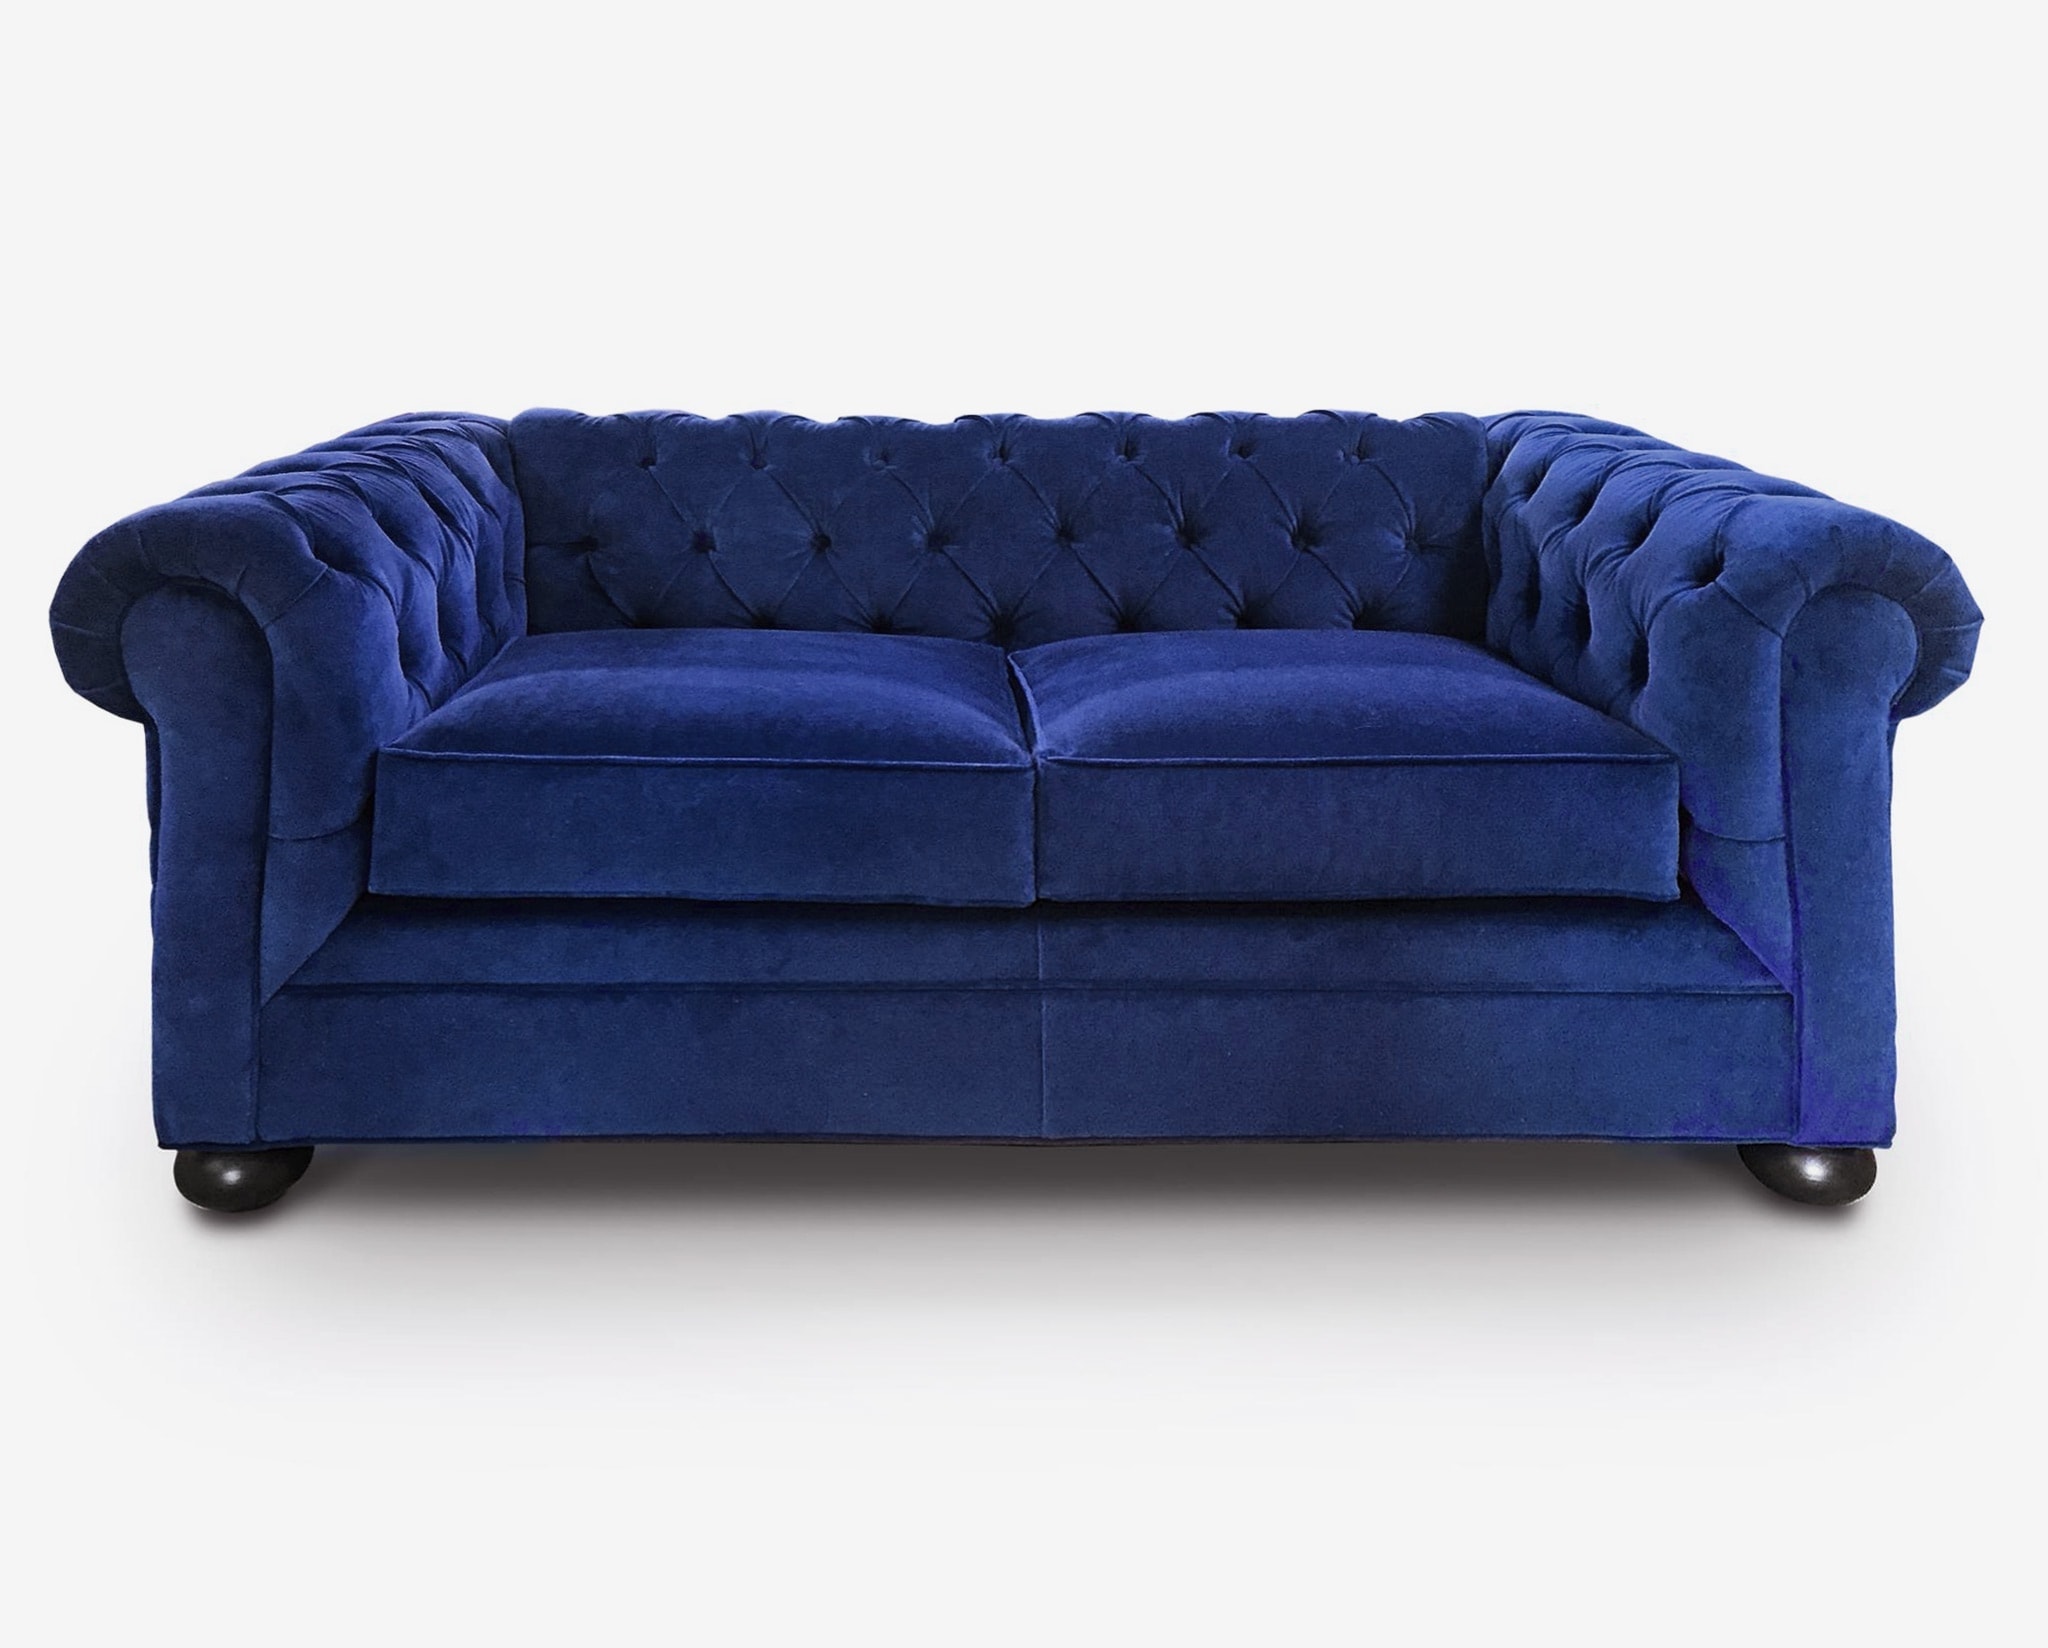 Irving Traditional Chesterfield Sofa in Custom Sapphire Blue Velvet